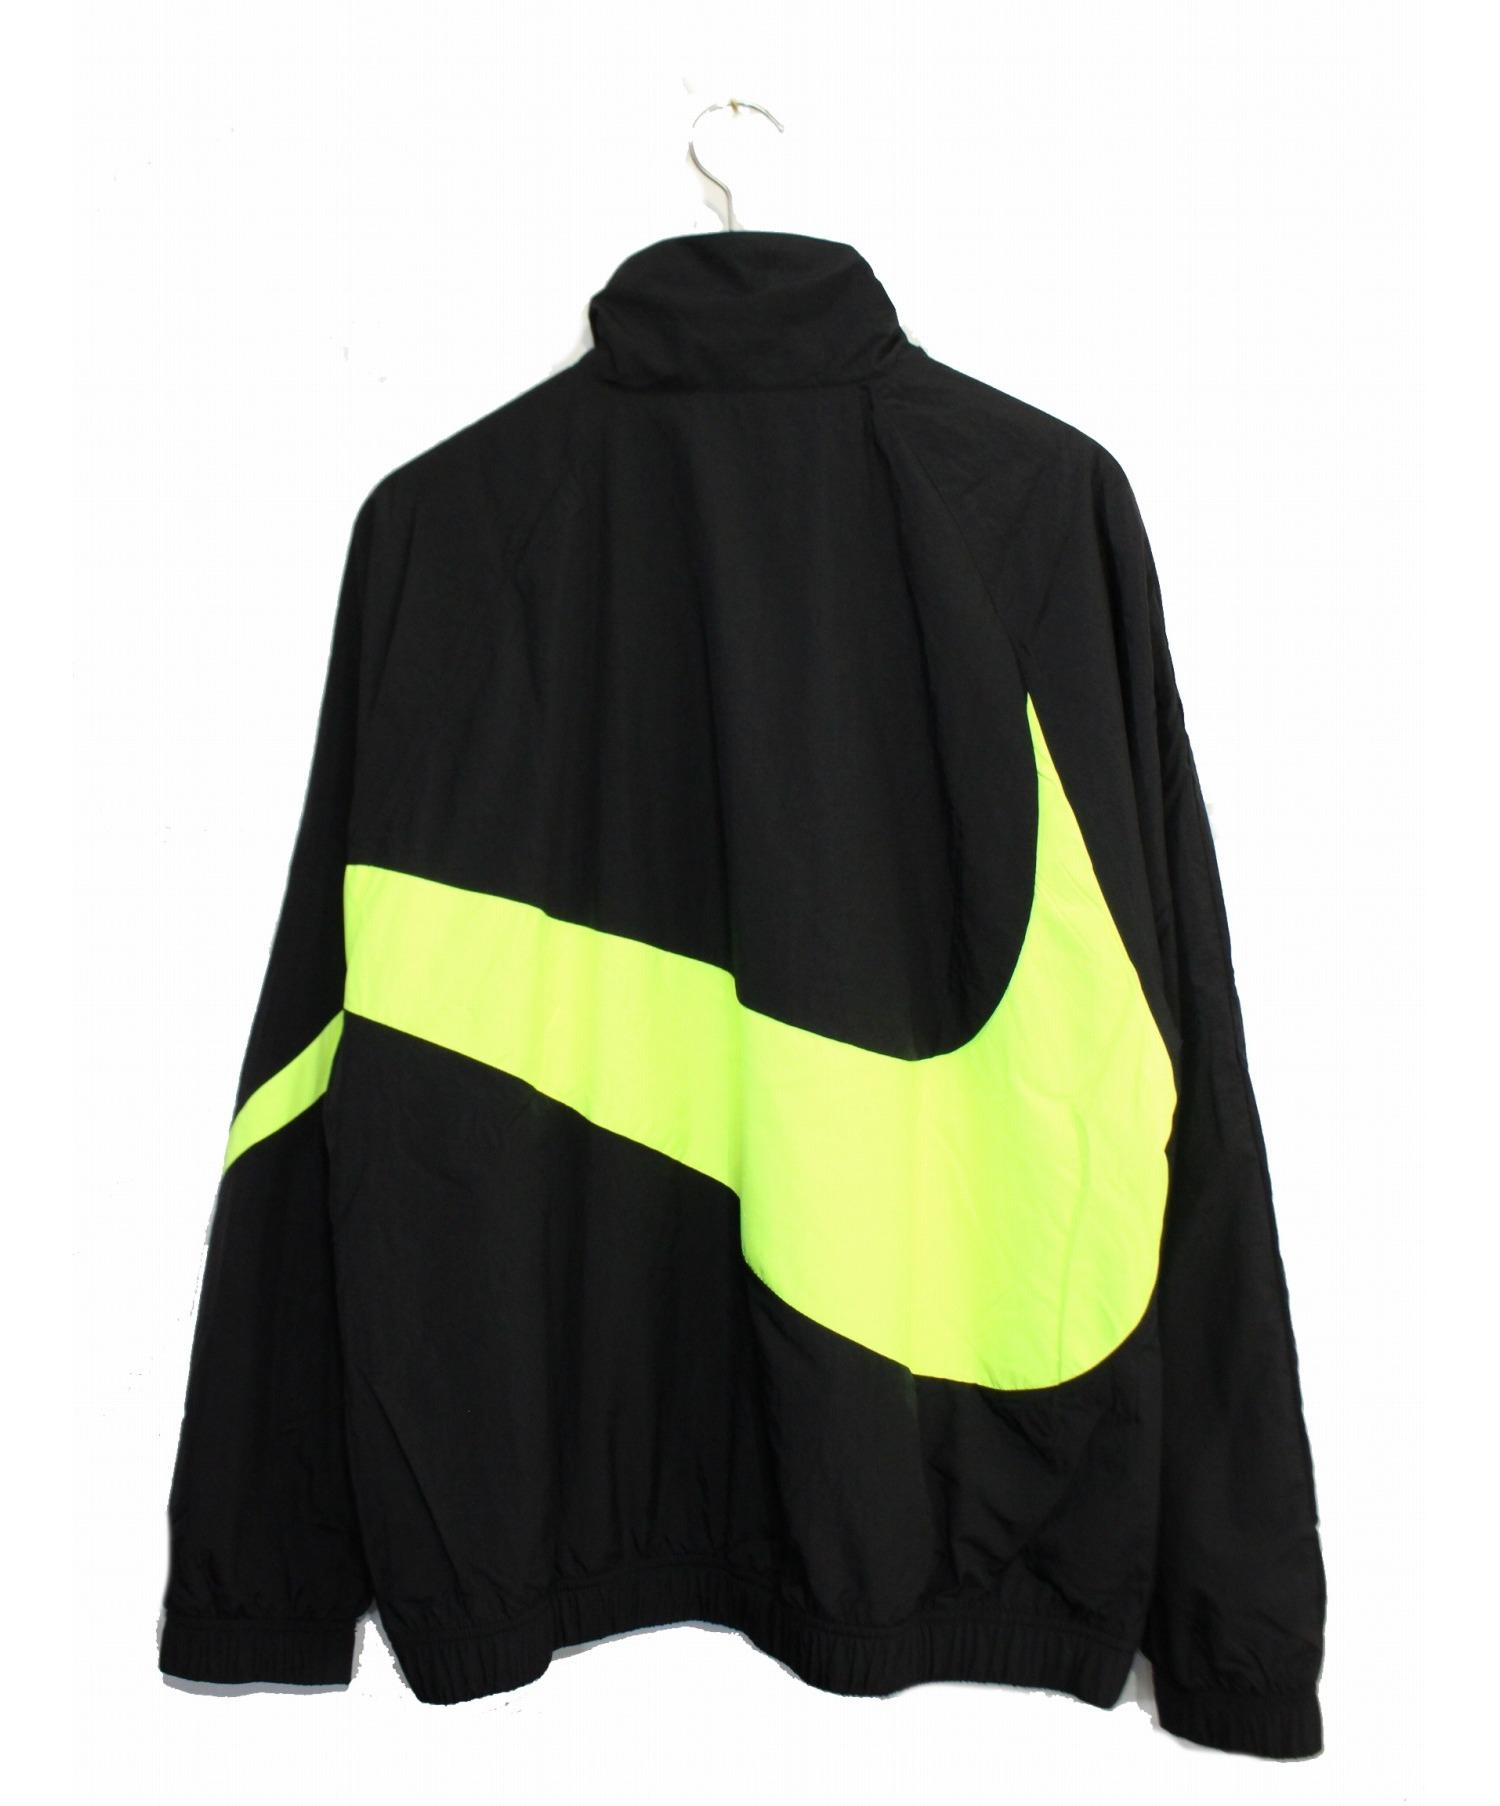 中古 古着通販 Nike ナイキ City Neon Hbr Woven Jacket サイズ M ブランド 古着通販 トレファク公式 Trefac Fashion